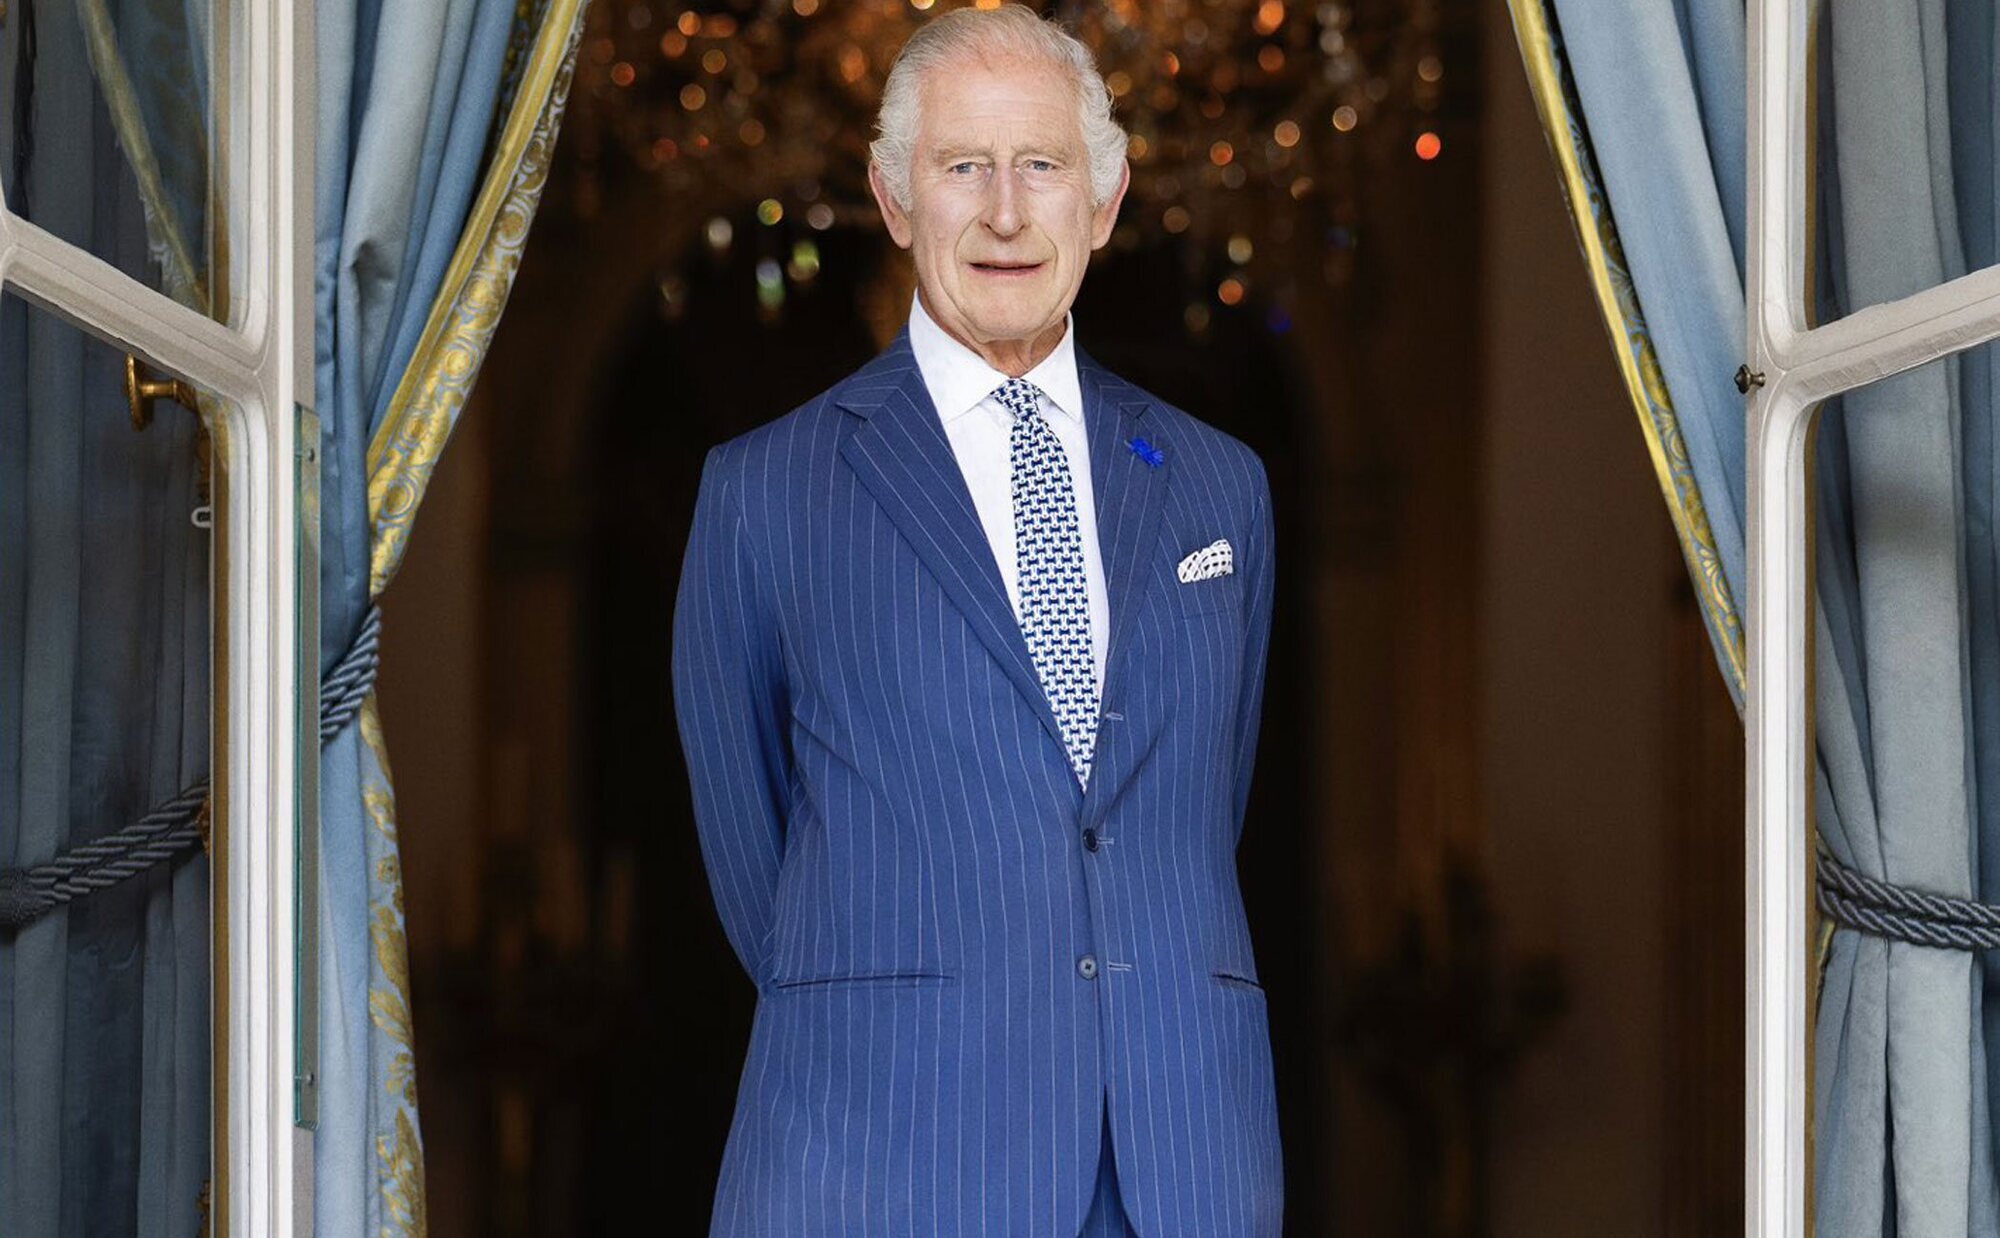 El Rey Carlos III tiene motivos para la esperanza ante su diagnóstico de cáncer: "Él y sus médicos son muy positivos"